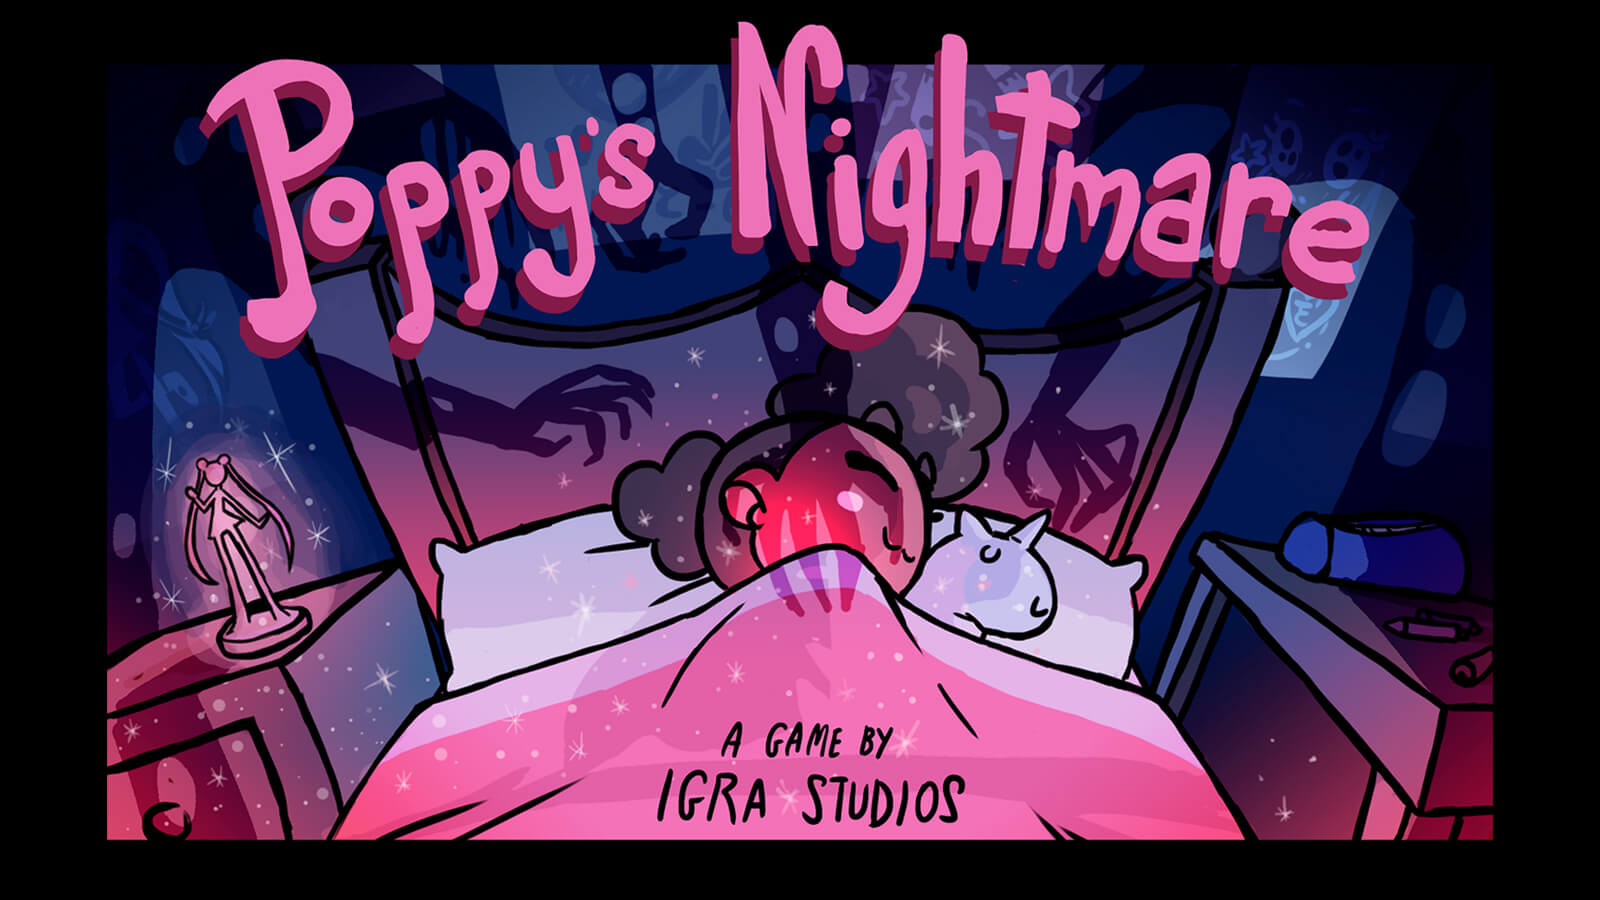 La pantalla de título de Poppy's Nightmare, que muestra al personaje principal durmiendo en la cama mientras sombras de manos aterradoras la acechan.